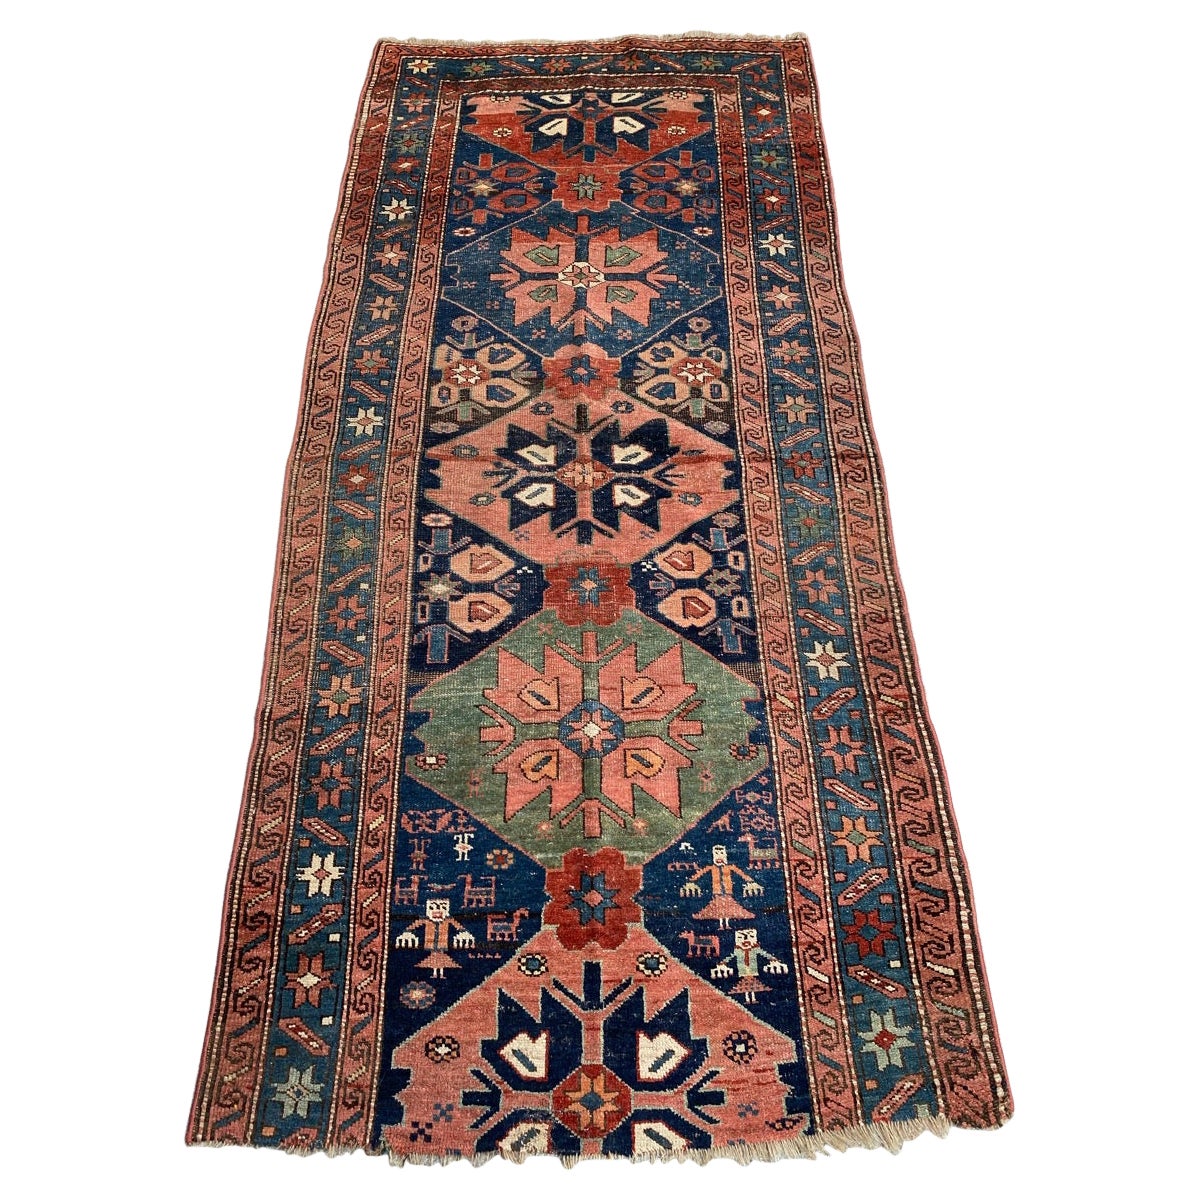 Bobyrug's Schöner Antiker Kurdischer Teppich